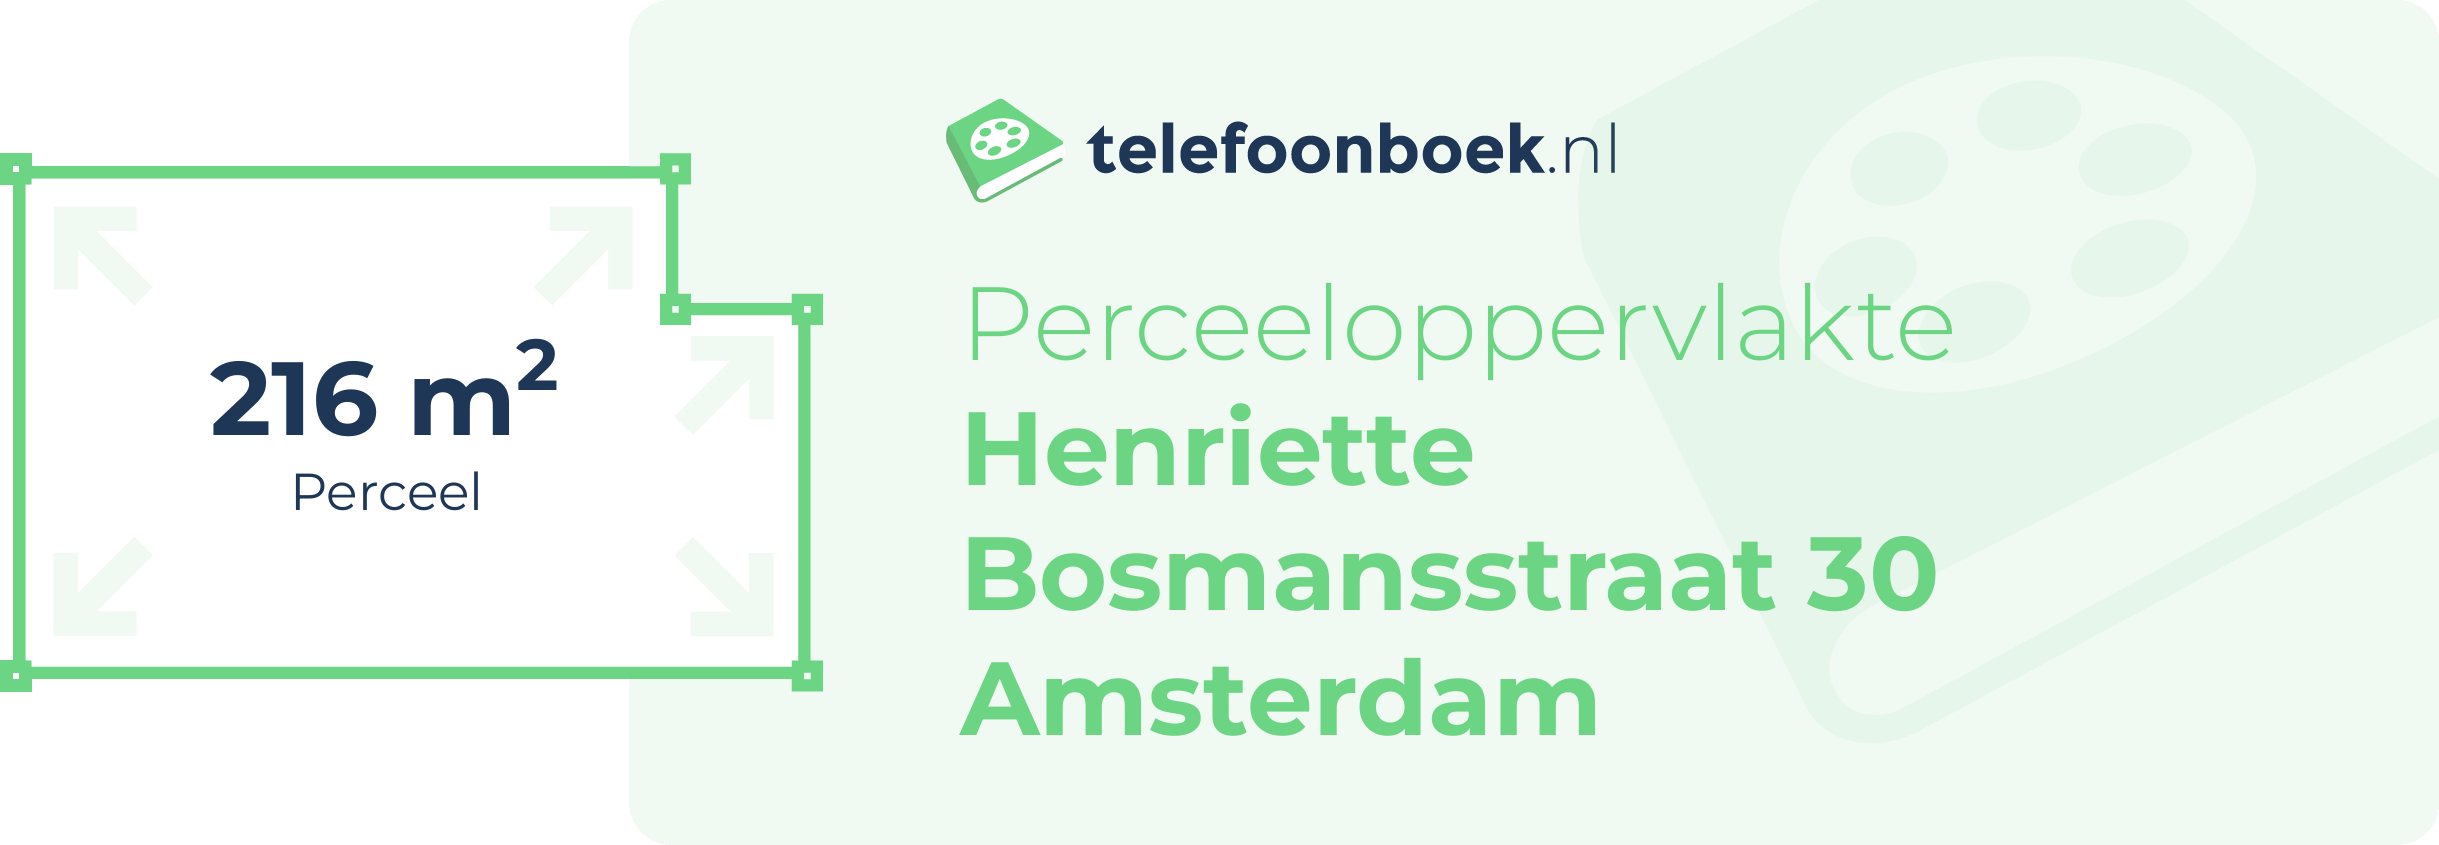 Perceeloppervlakte Henriette Bosmansstraat 30 Amsterdam